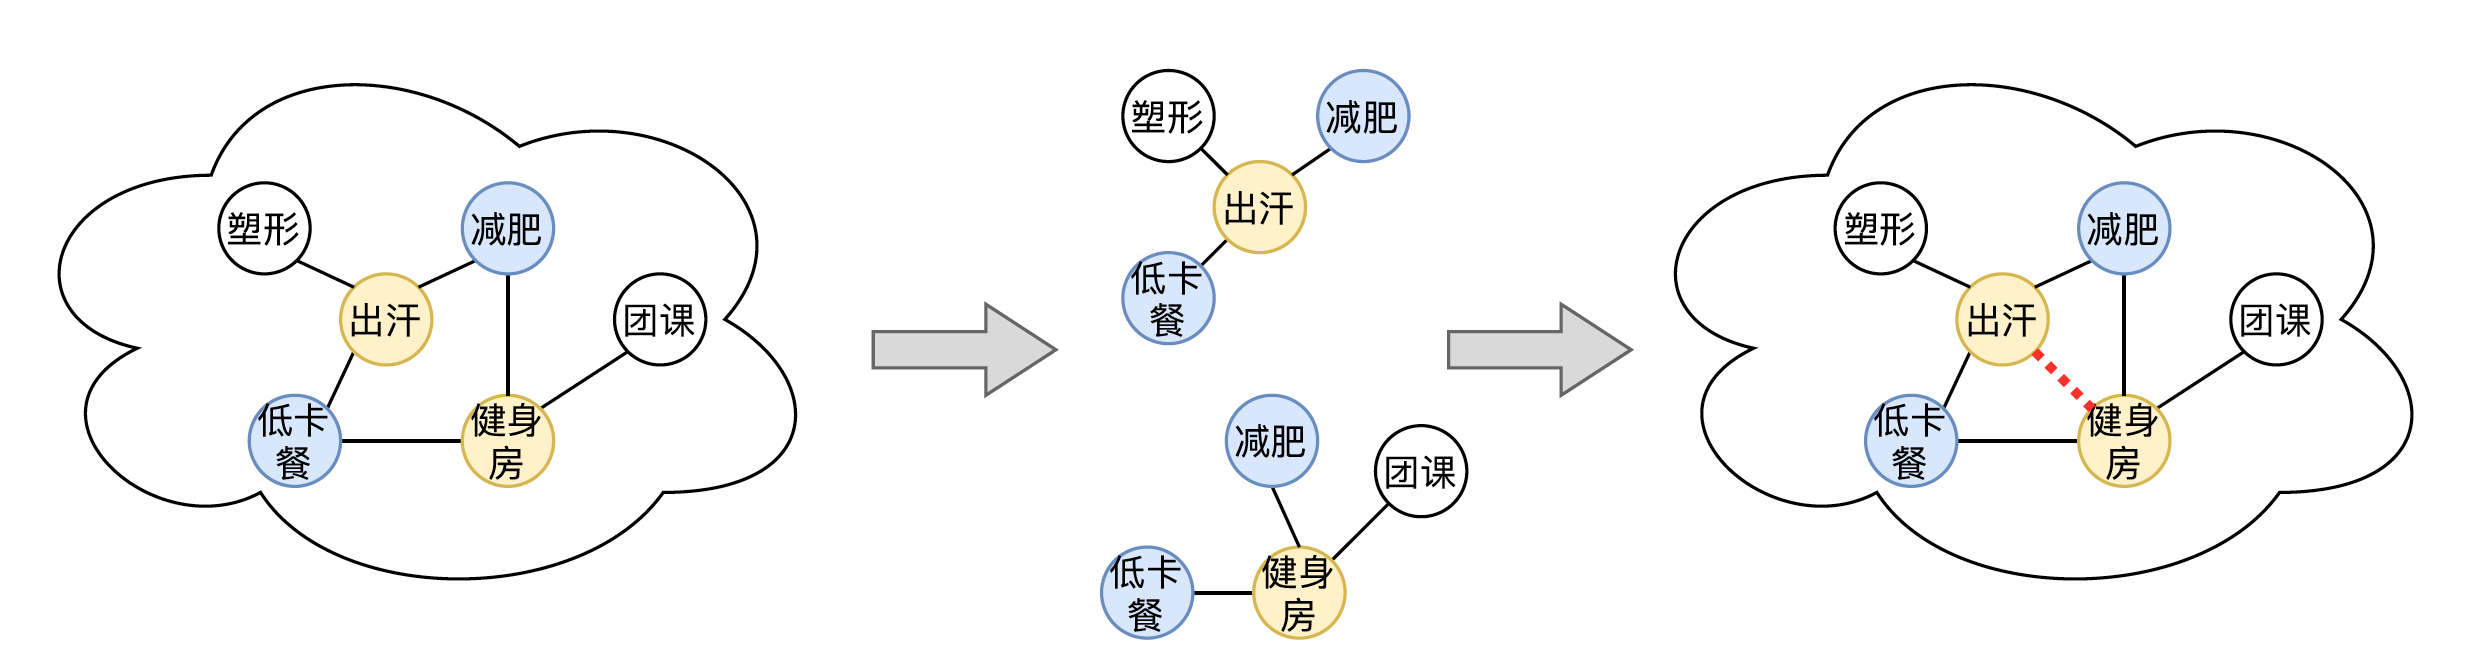 Figure 17 Diagramme supplémentaire de la relation d'héritage conceptuel